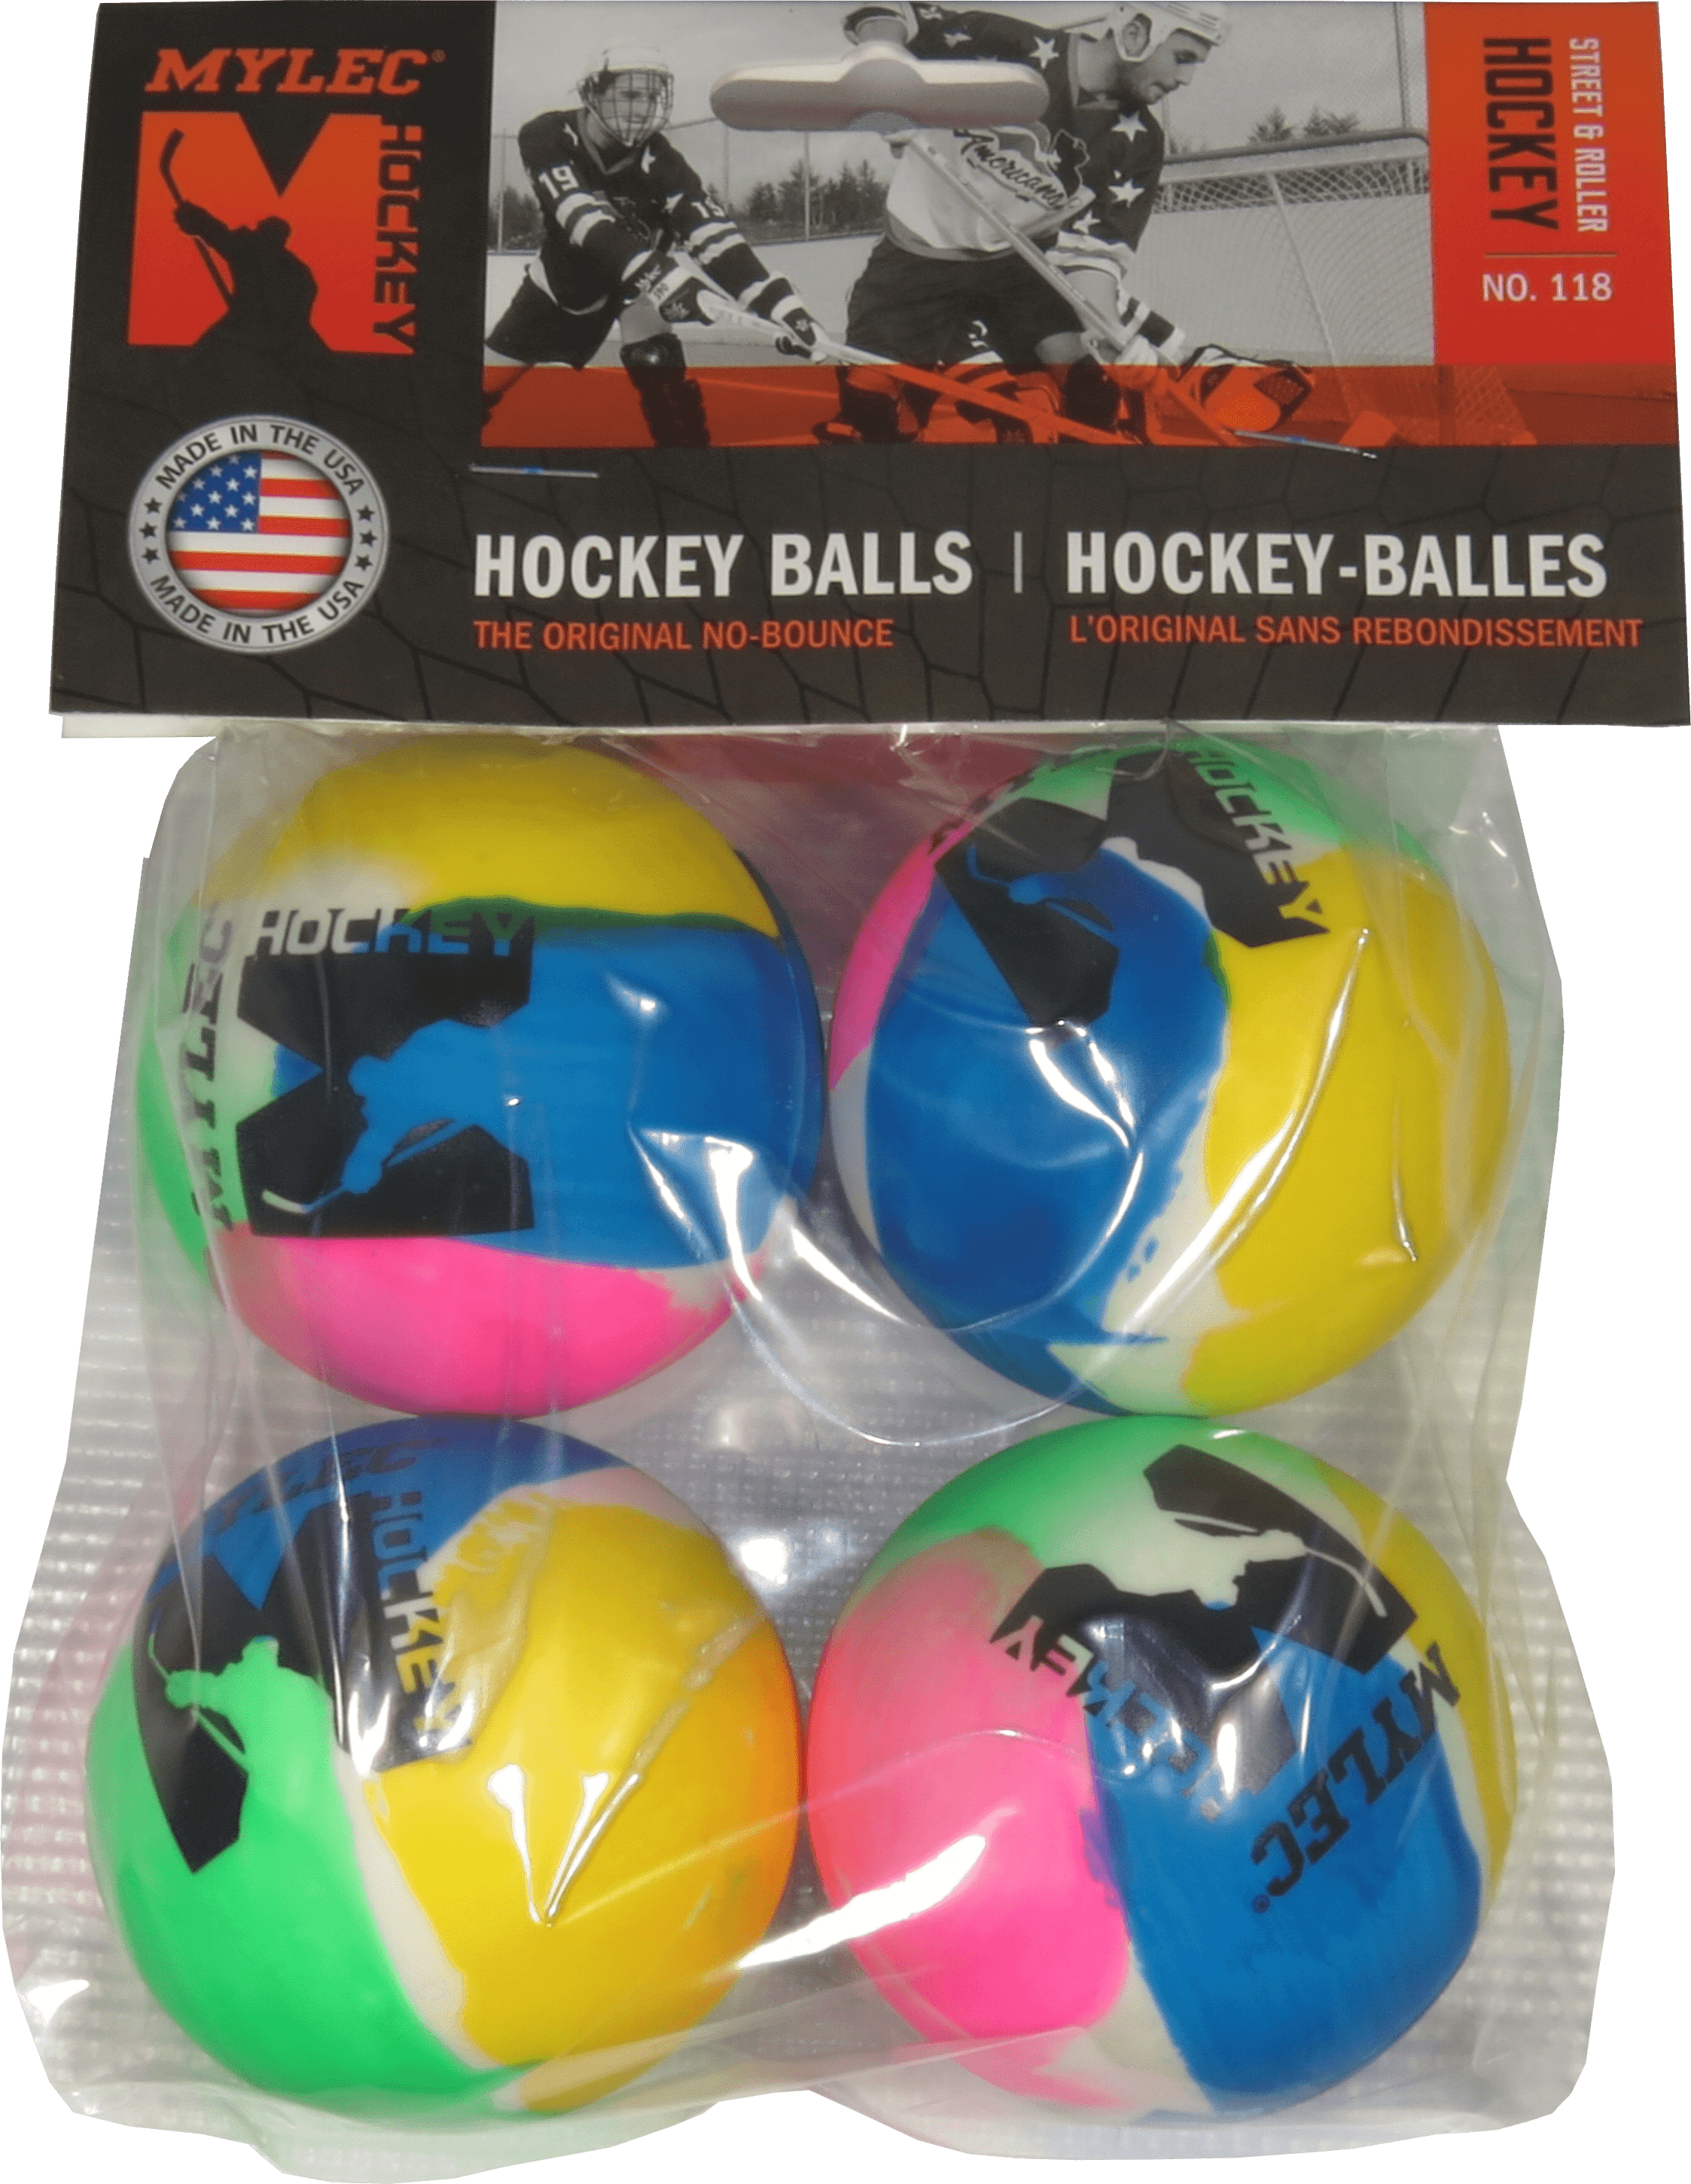 60 new Mylec hockey balls soft orange model 215 indoor outdoor floor five dozen 